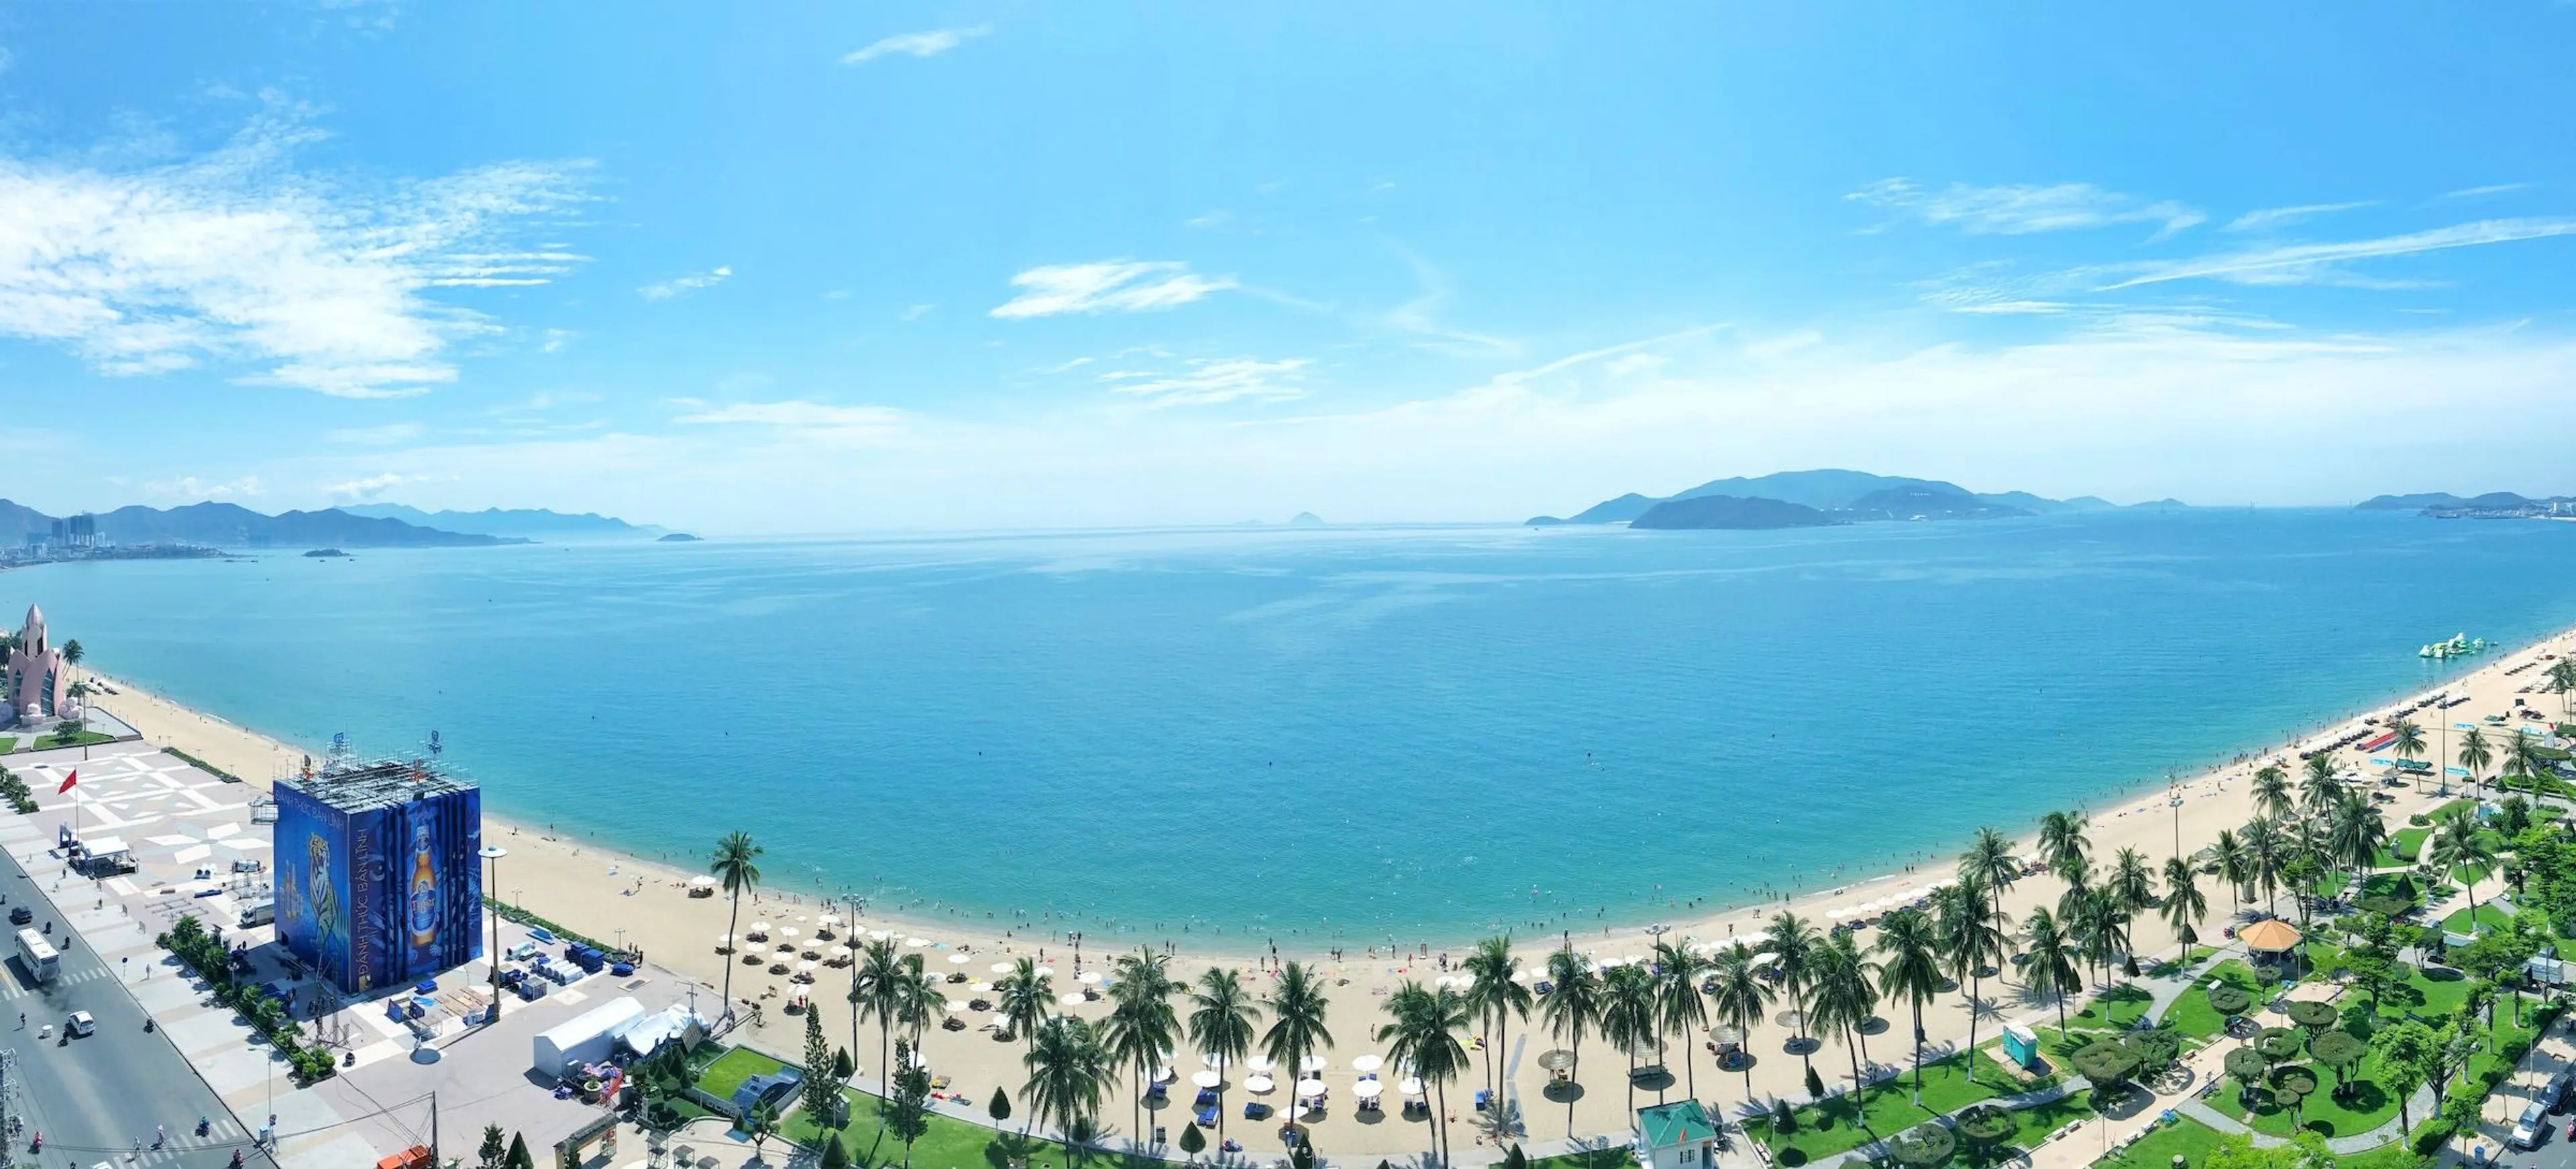 Aerial view off Nha Trang beaches